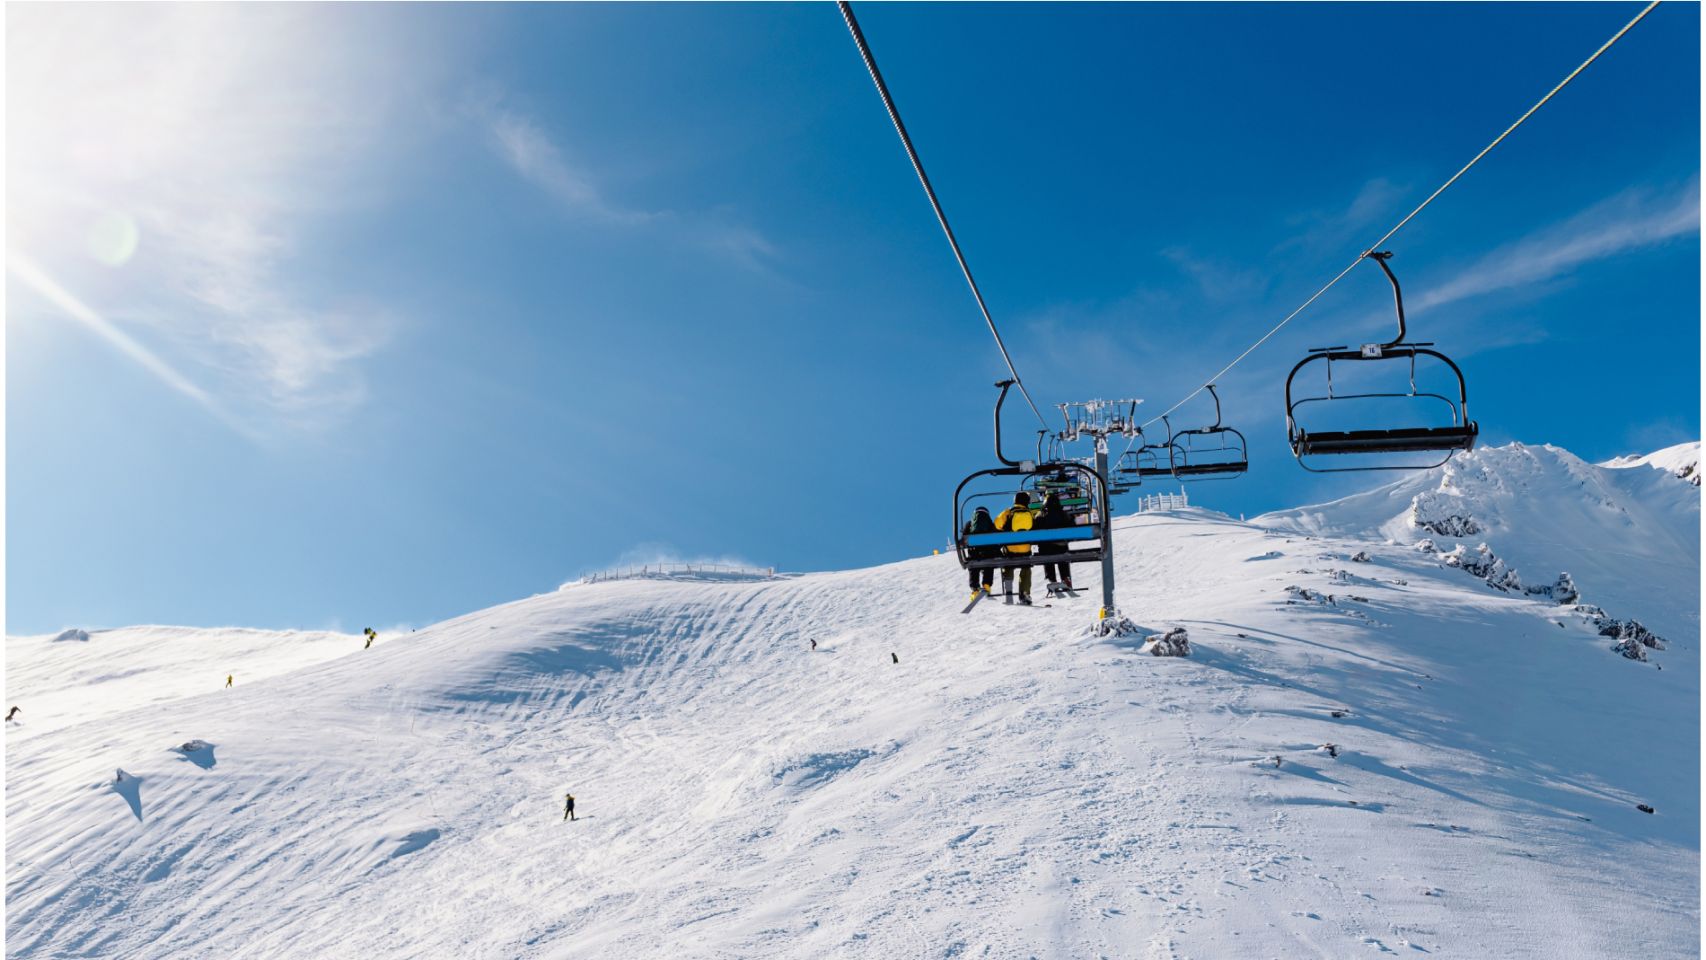 Servicio de telesilla en una pista de esquí